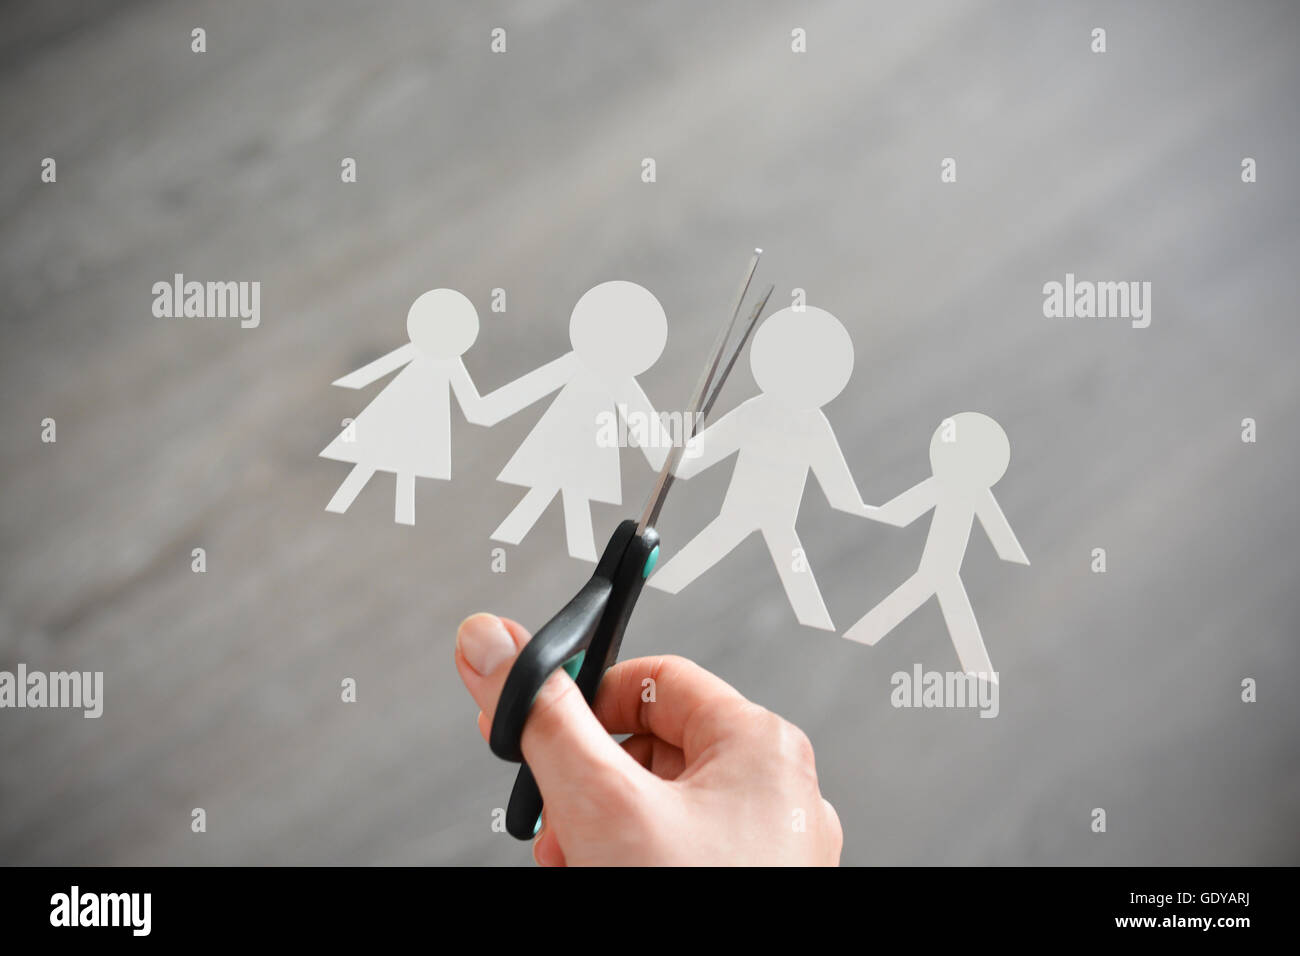 Familie Scheidung Konzept mit menschlichen Papier Formen und Schere schlägt Beziehungsprobleme Stockfoto